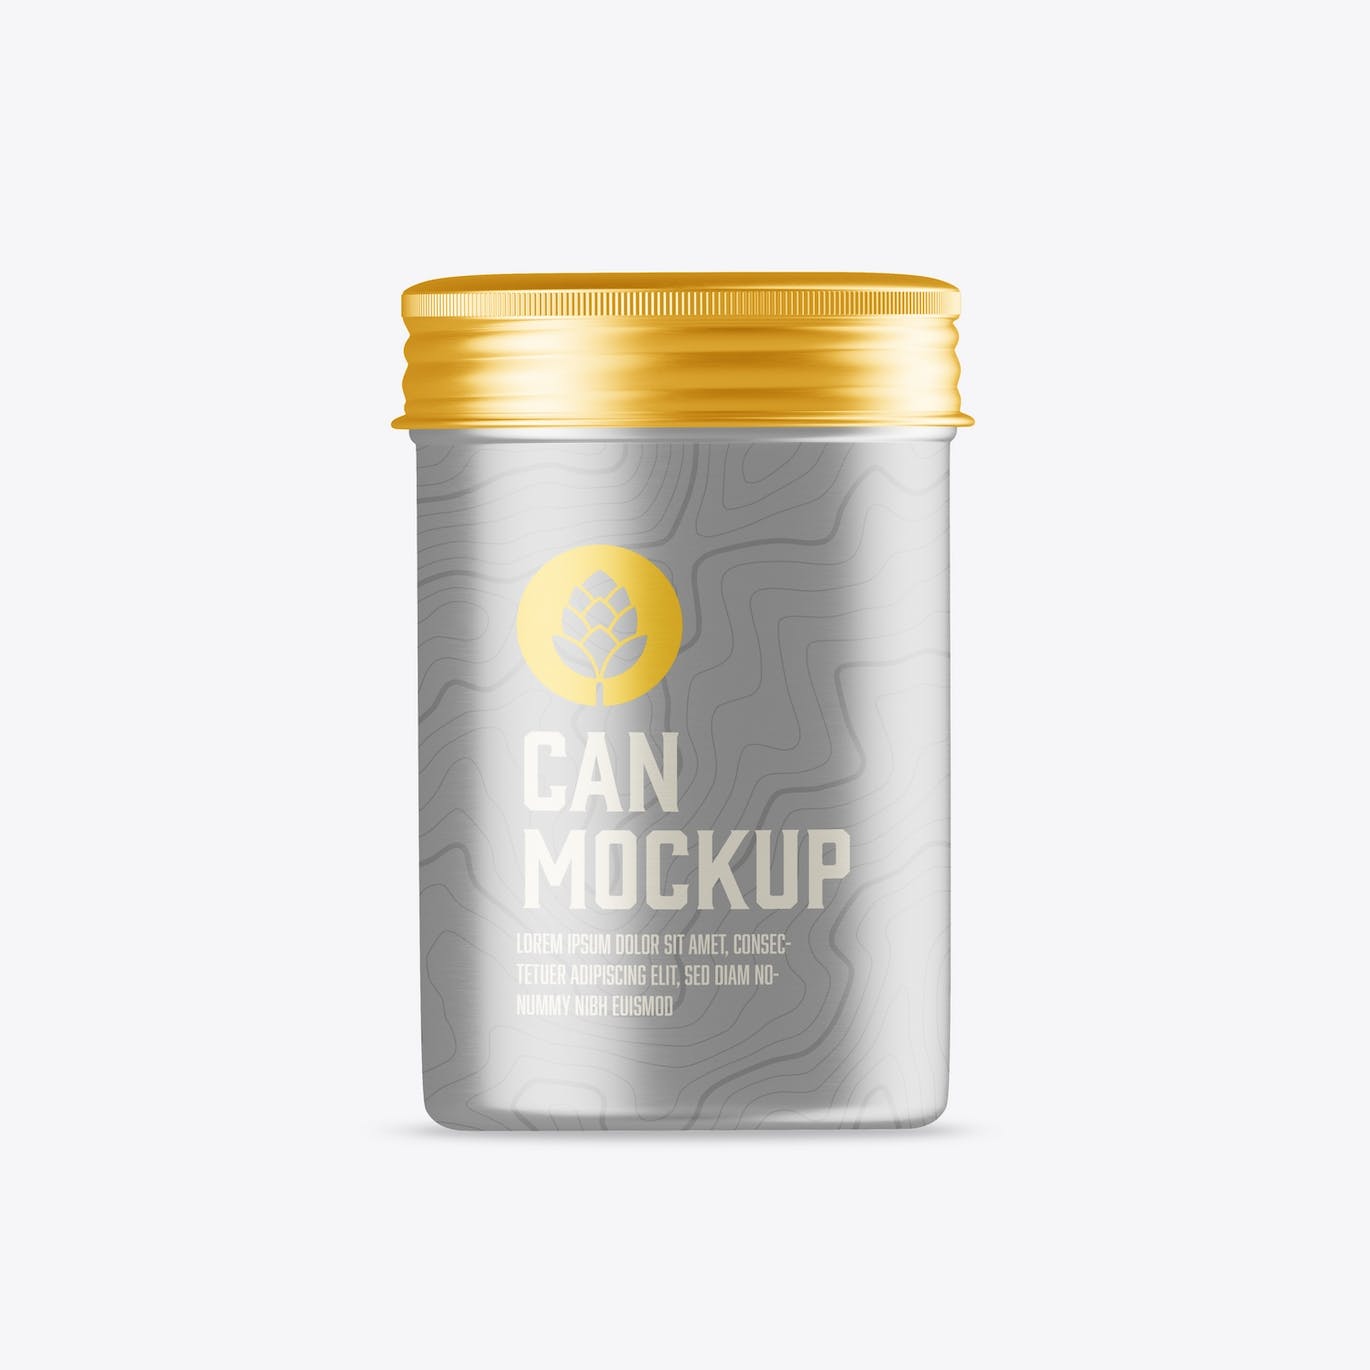 茶叶罐锡罐包装设计样机 Colored Tin Mockup 样机素材 第3张